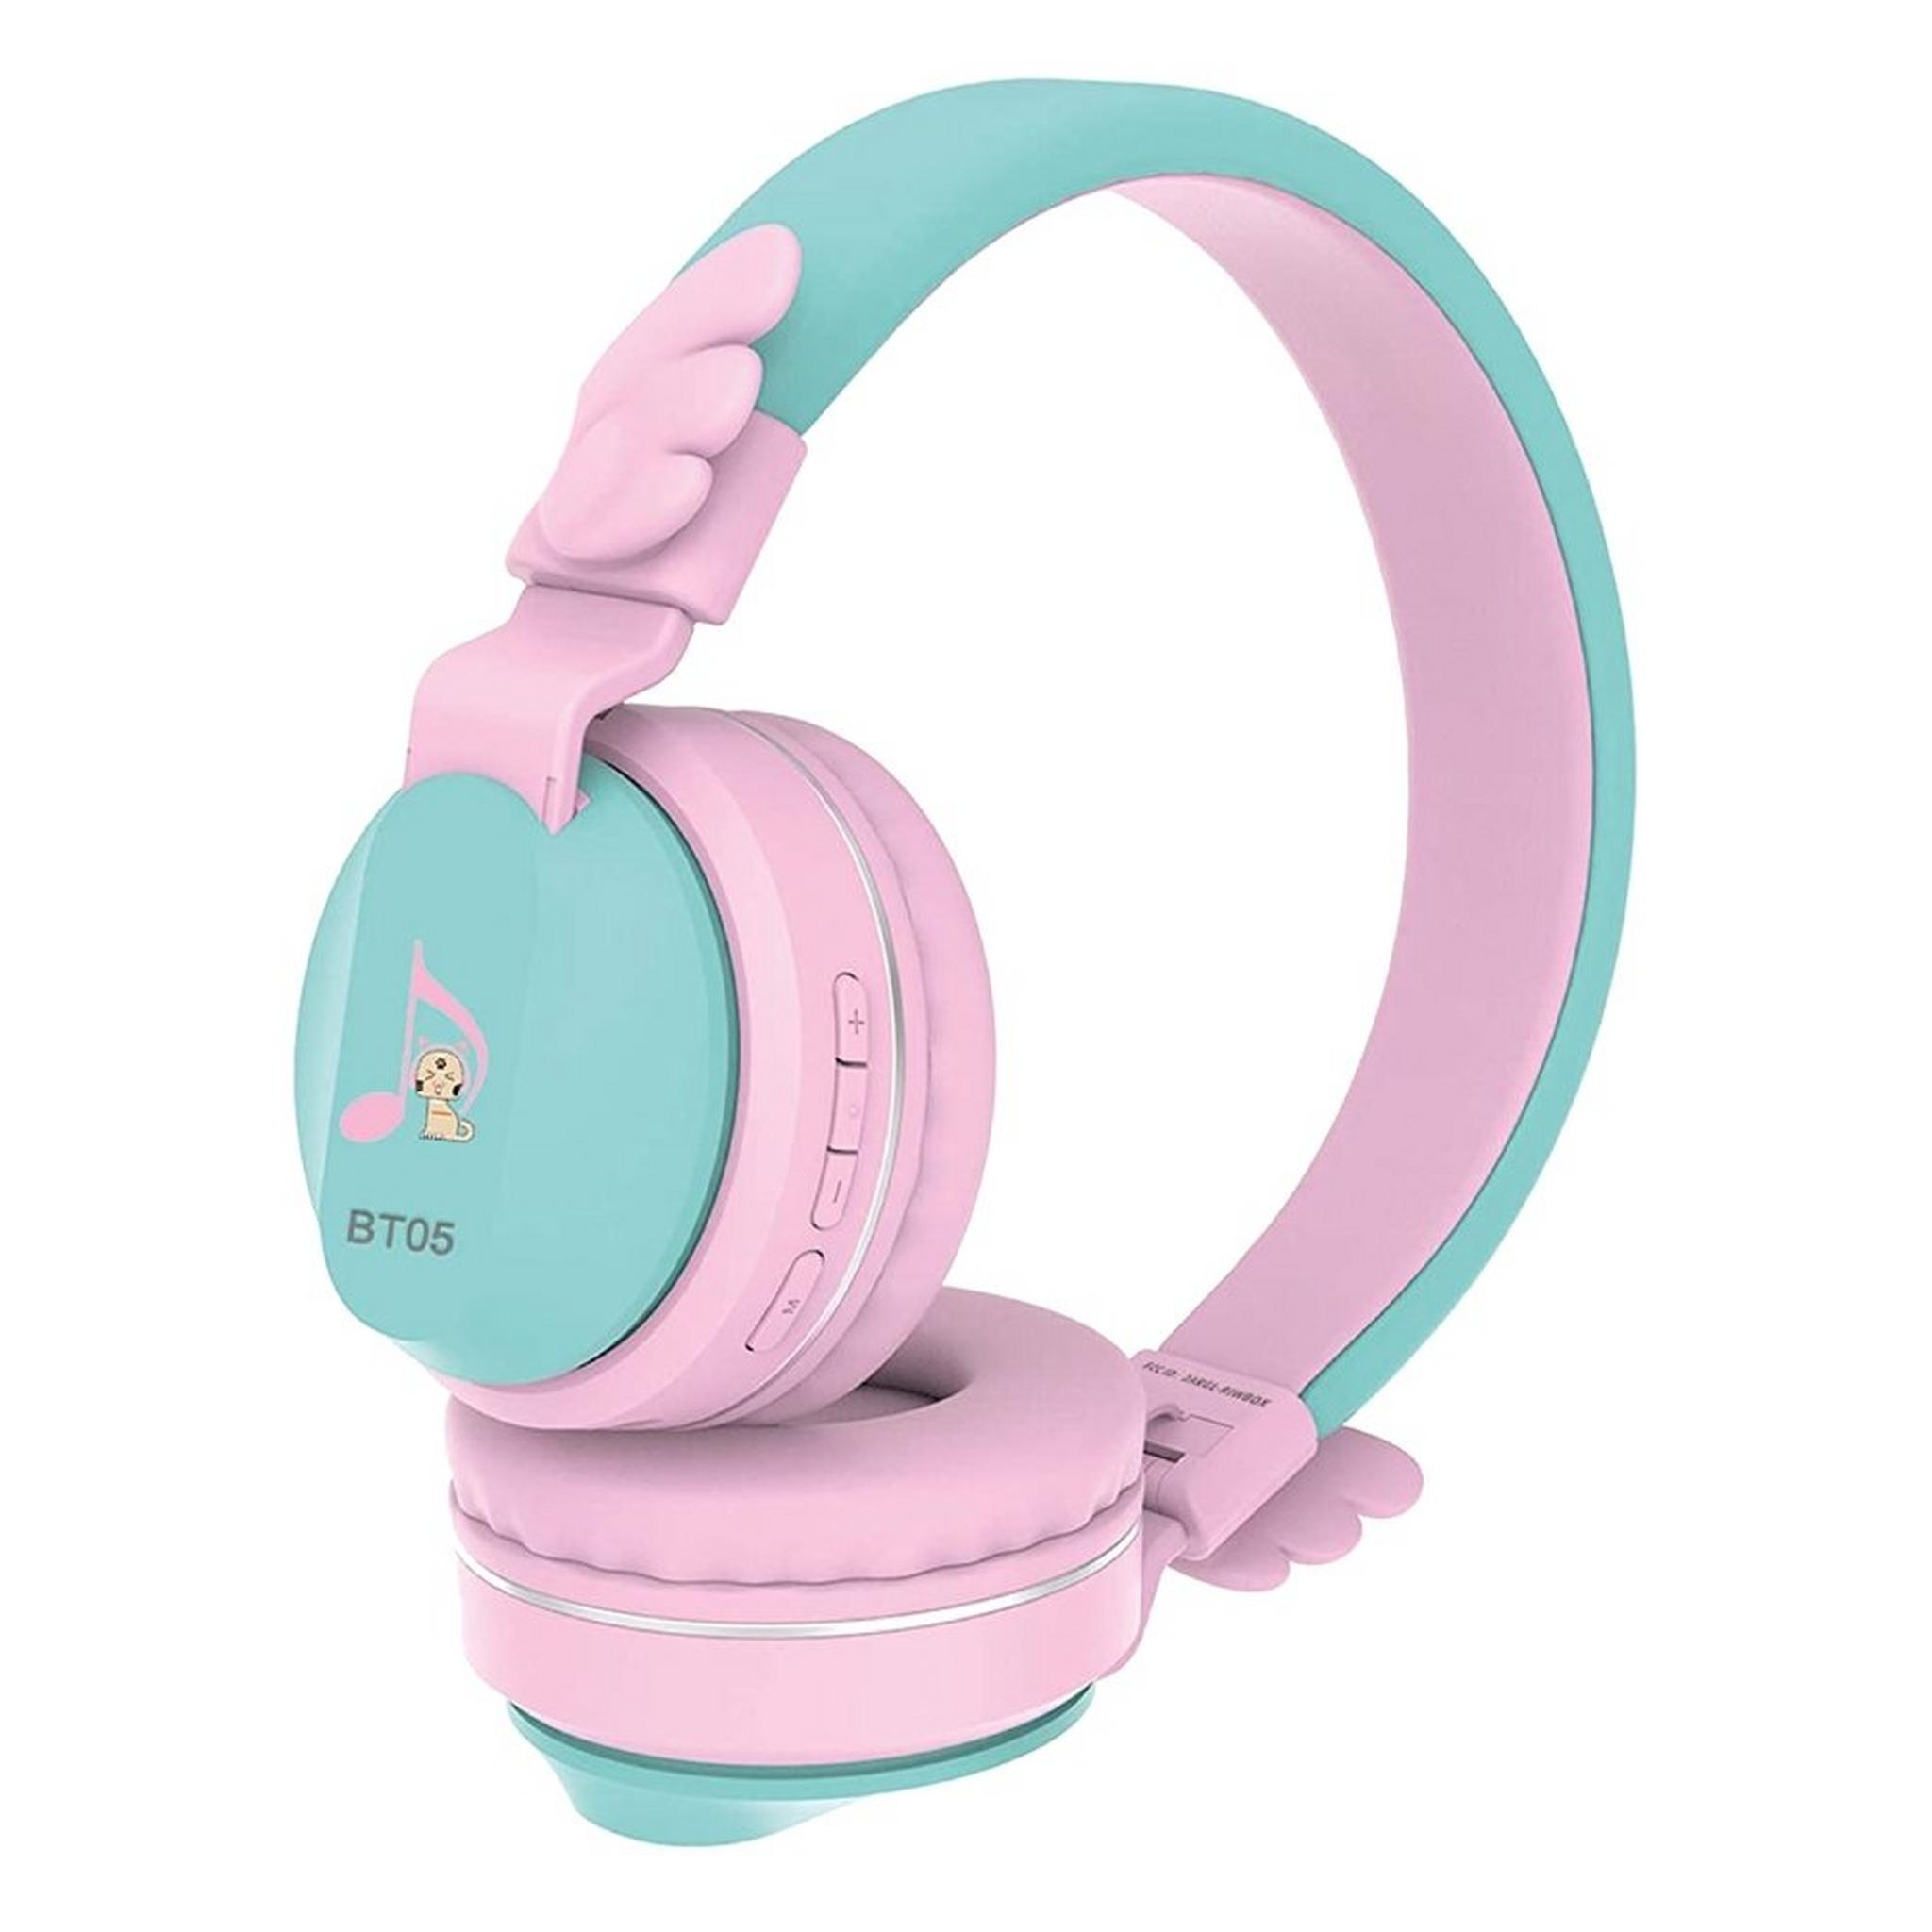 Riwbox Wings Kids Bluetooth Headphones - Pink/Green